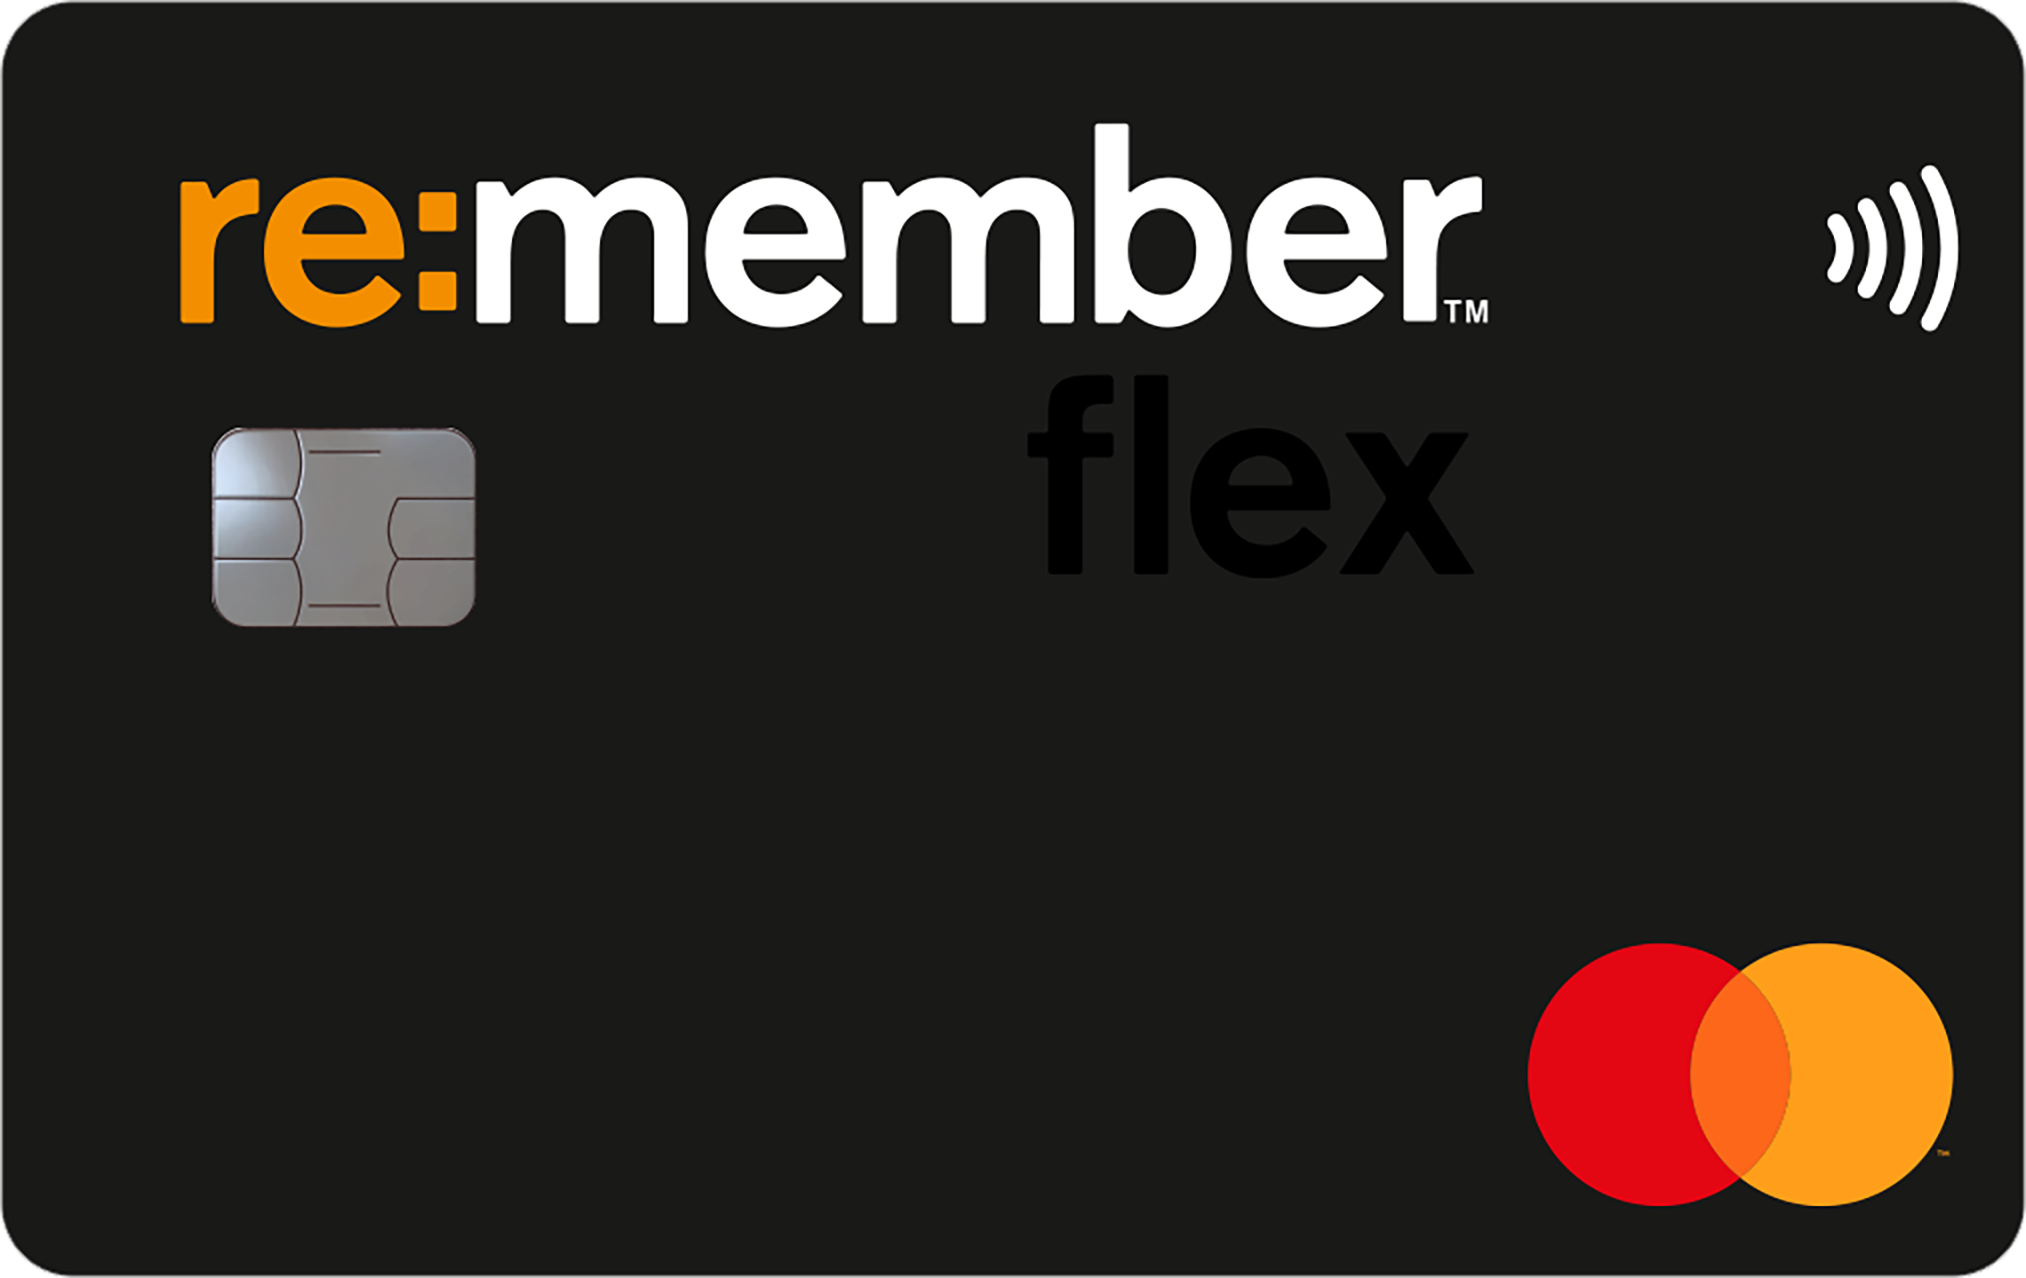 Re:member Flex är första bästa kreditkort